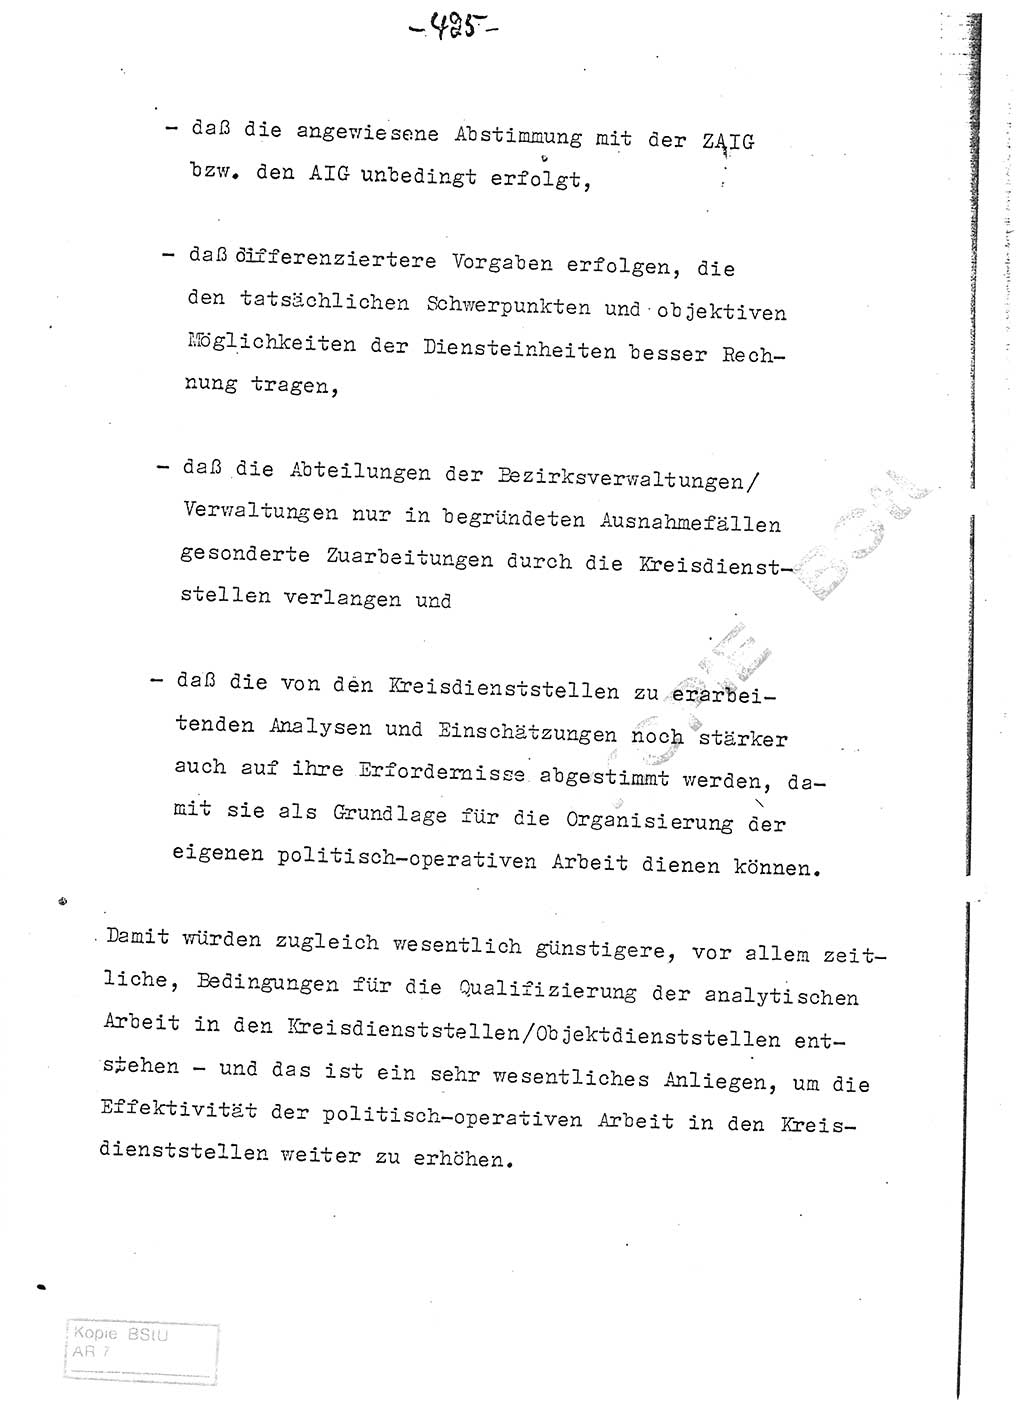 Referat (Entwurf) des Genossen Minister (Generaloberst Erich Mielke) auf der Dienstkonferenz 1972, Ministerium für Staatssicherheit (MfS) [Deutsche Demokratische Republik (DDR)], Der Minister, Geheime Verschlußsache (GVS) 008-150/72, Berlin 25.2.1972, Seite 425 (Ref. Entw. DK MfS DDR Min. GVS 008-150/72 1972, S. 425)